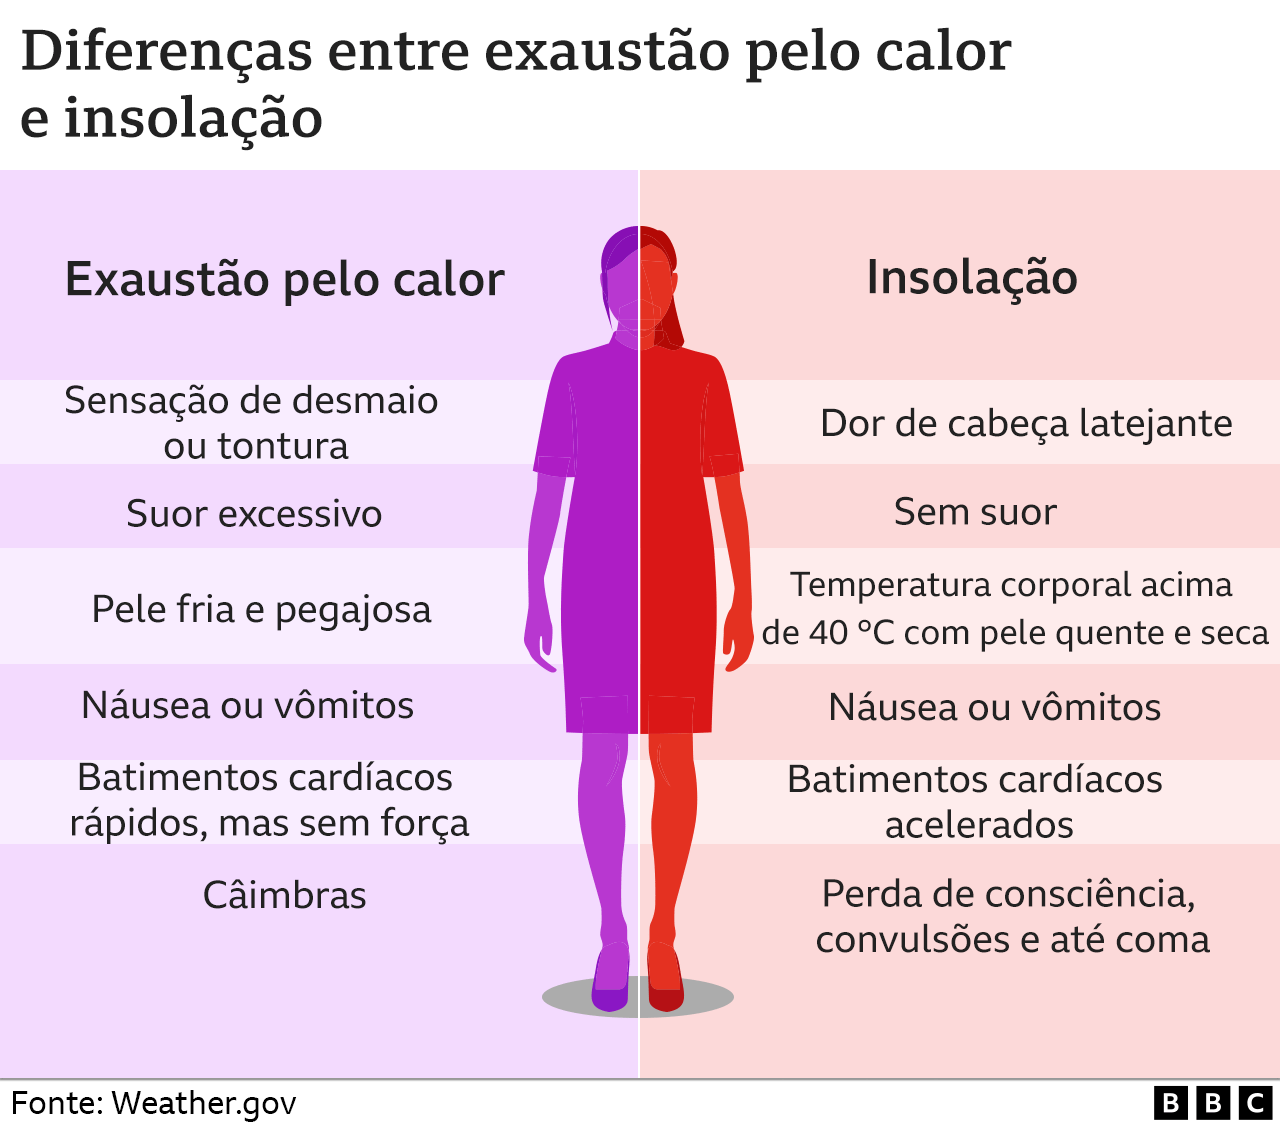 Diferenças entre exaustão pelo calor e insolação